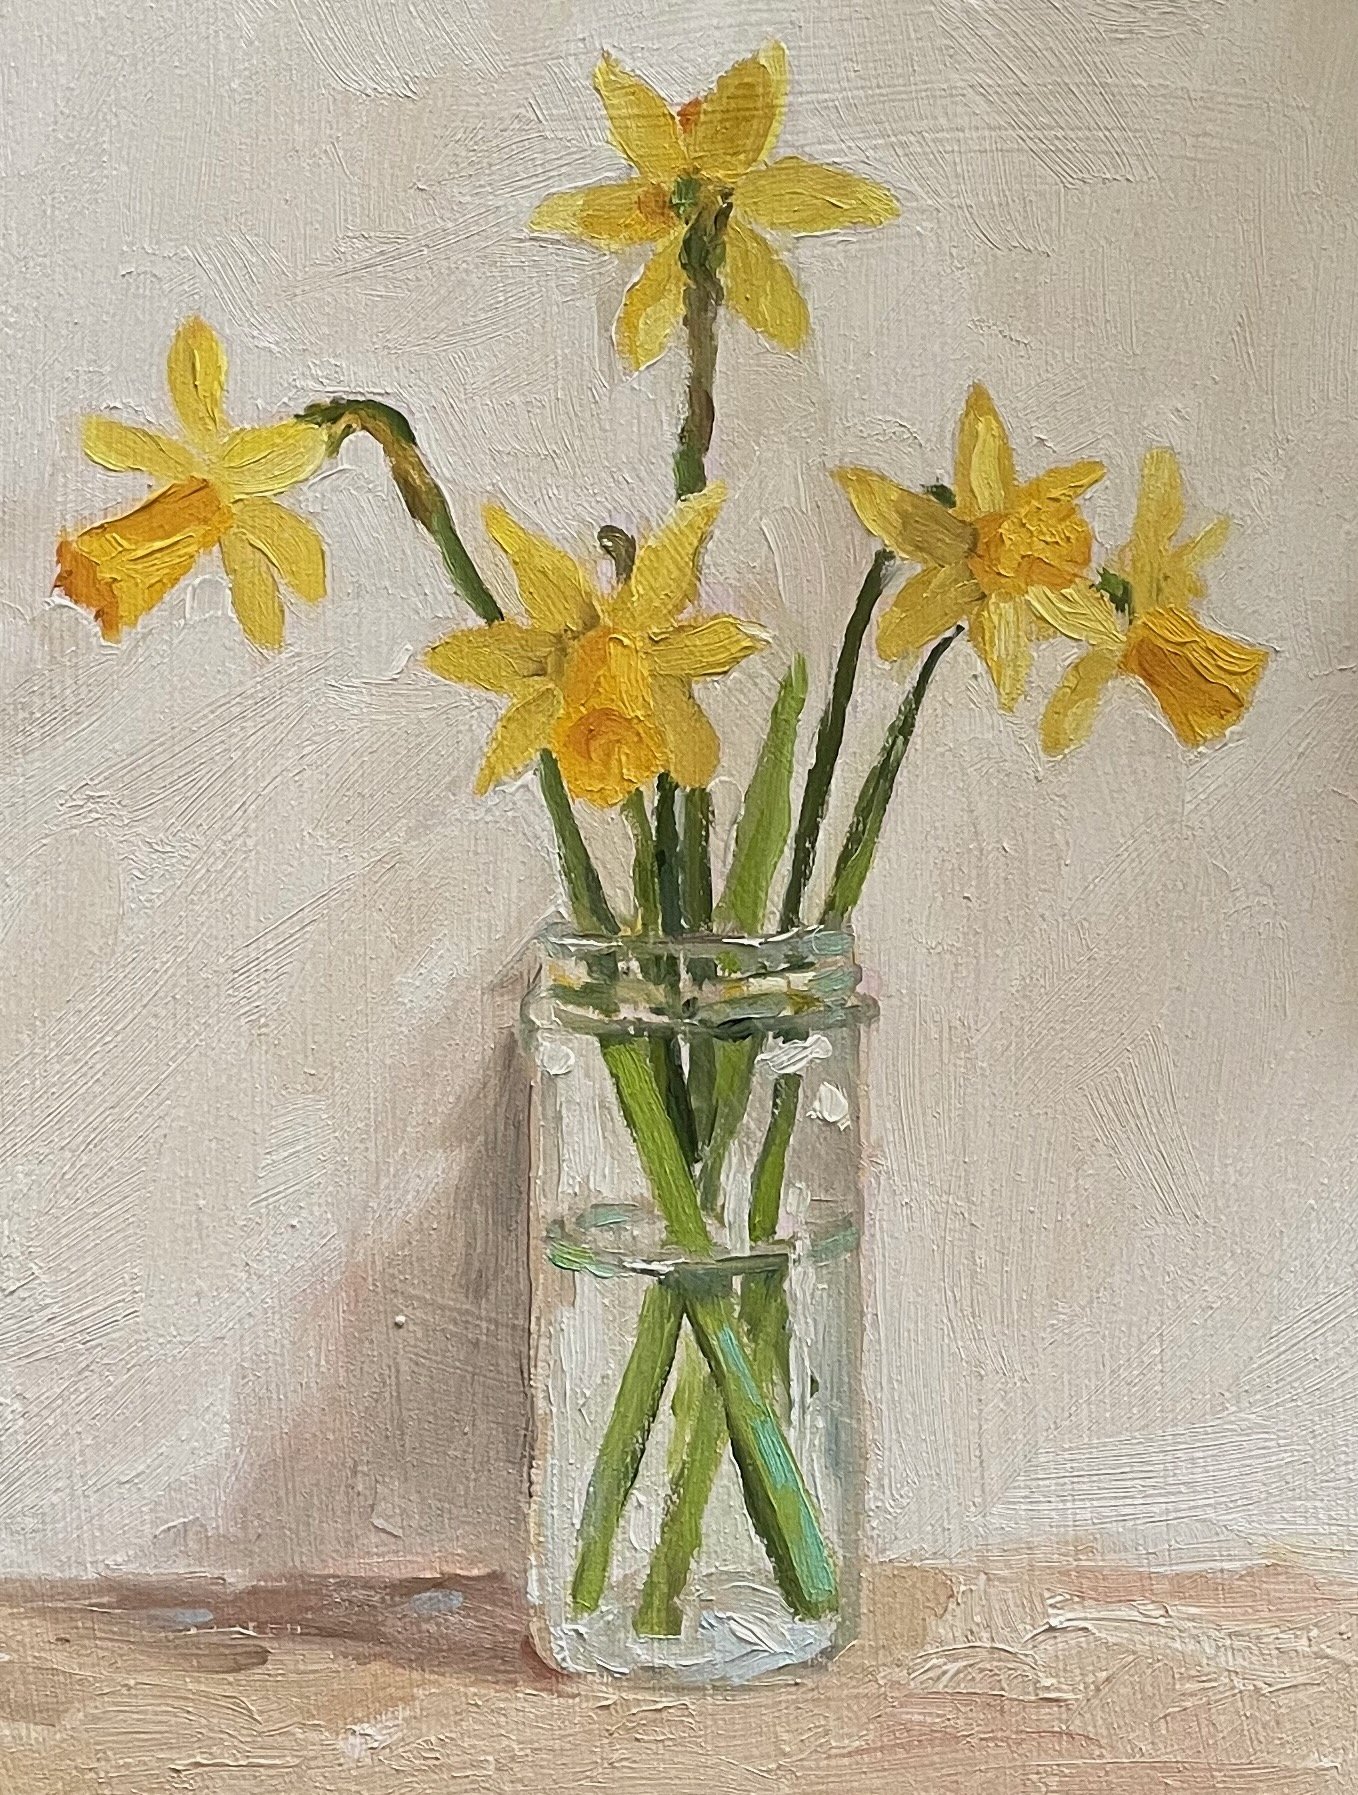 Daffodils in a spice jar